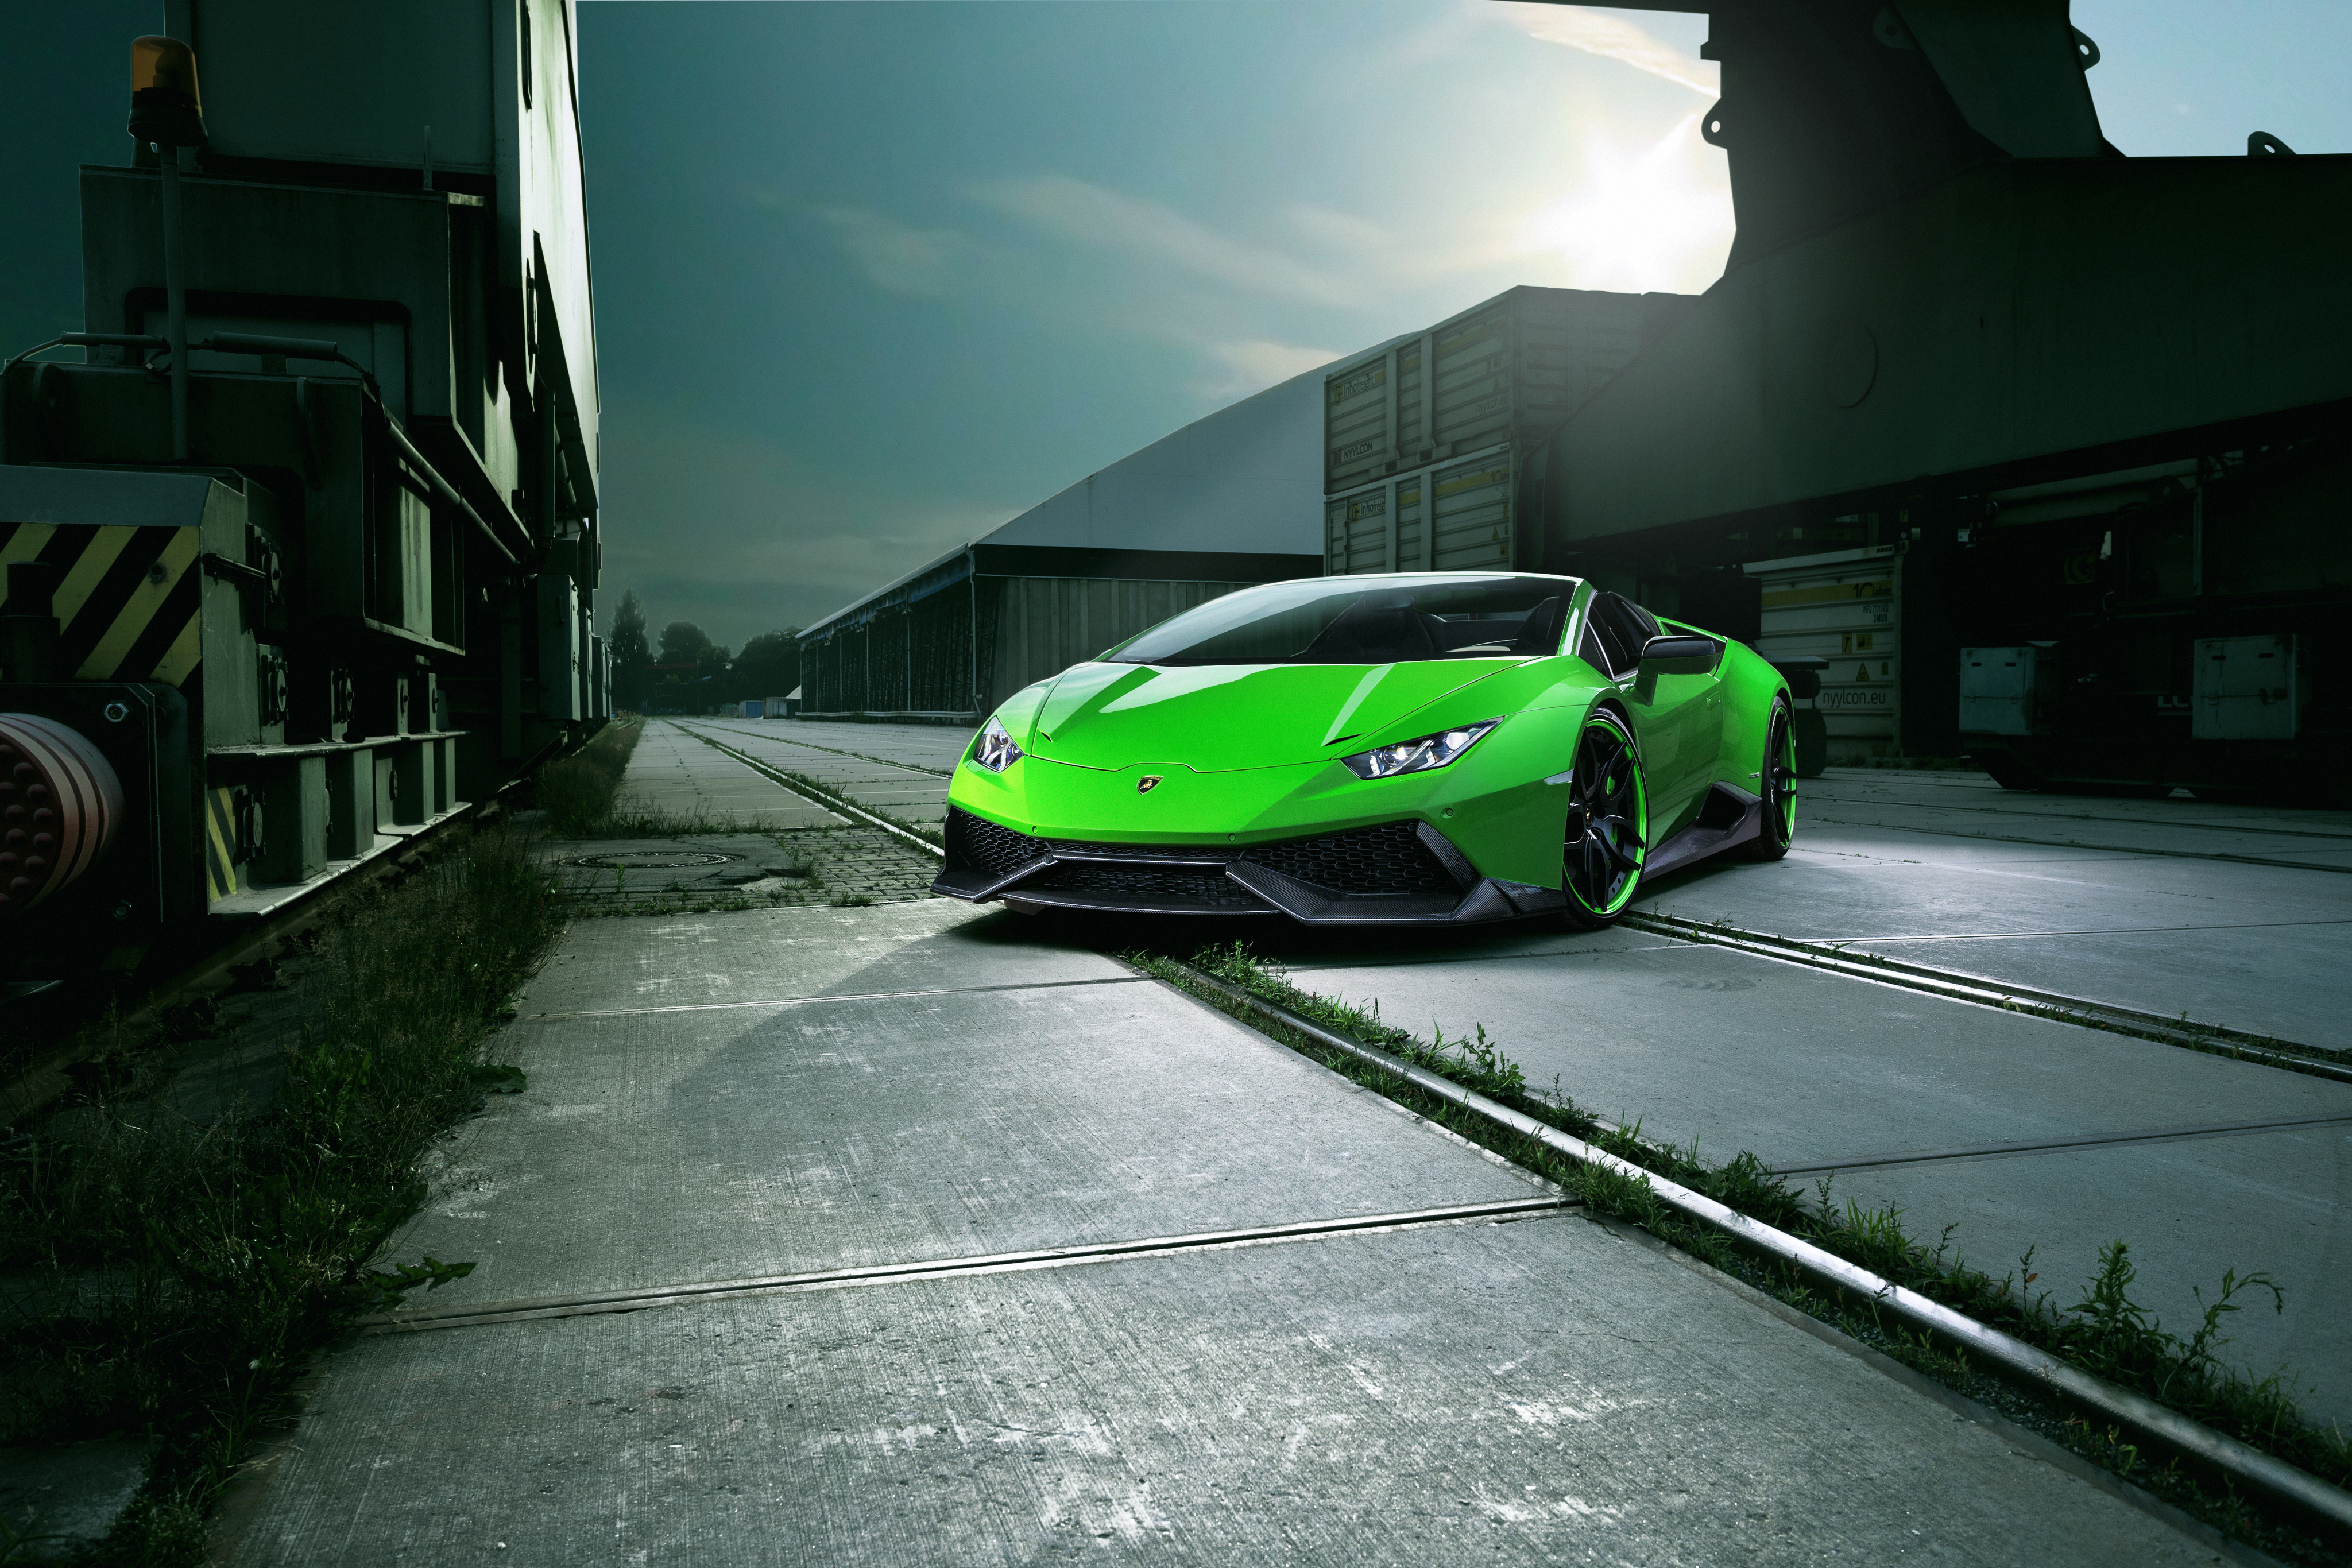 Hình nền Lamborghini là một lựa chọn thú vị cho bạn, để thể hiện đẳng cấp và phong cách của mình. Hãy tham khảo hình ảnh nền Lamborghini đầy đẳng cấp và sự sang trọng của hãng xe này.